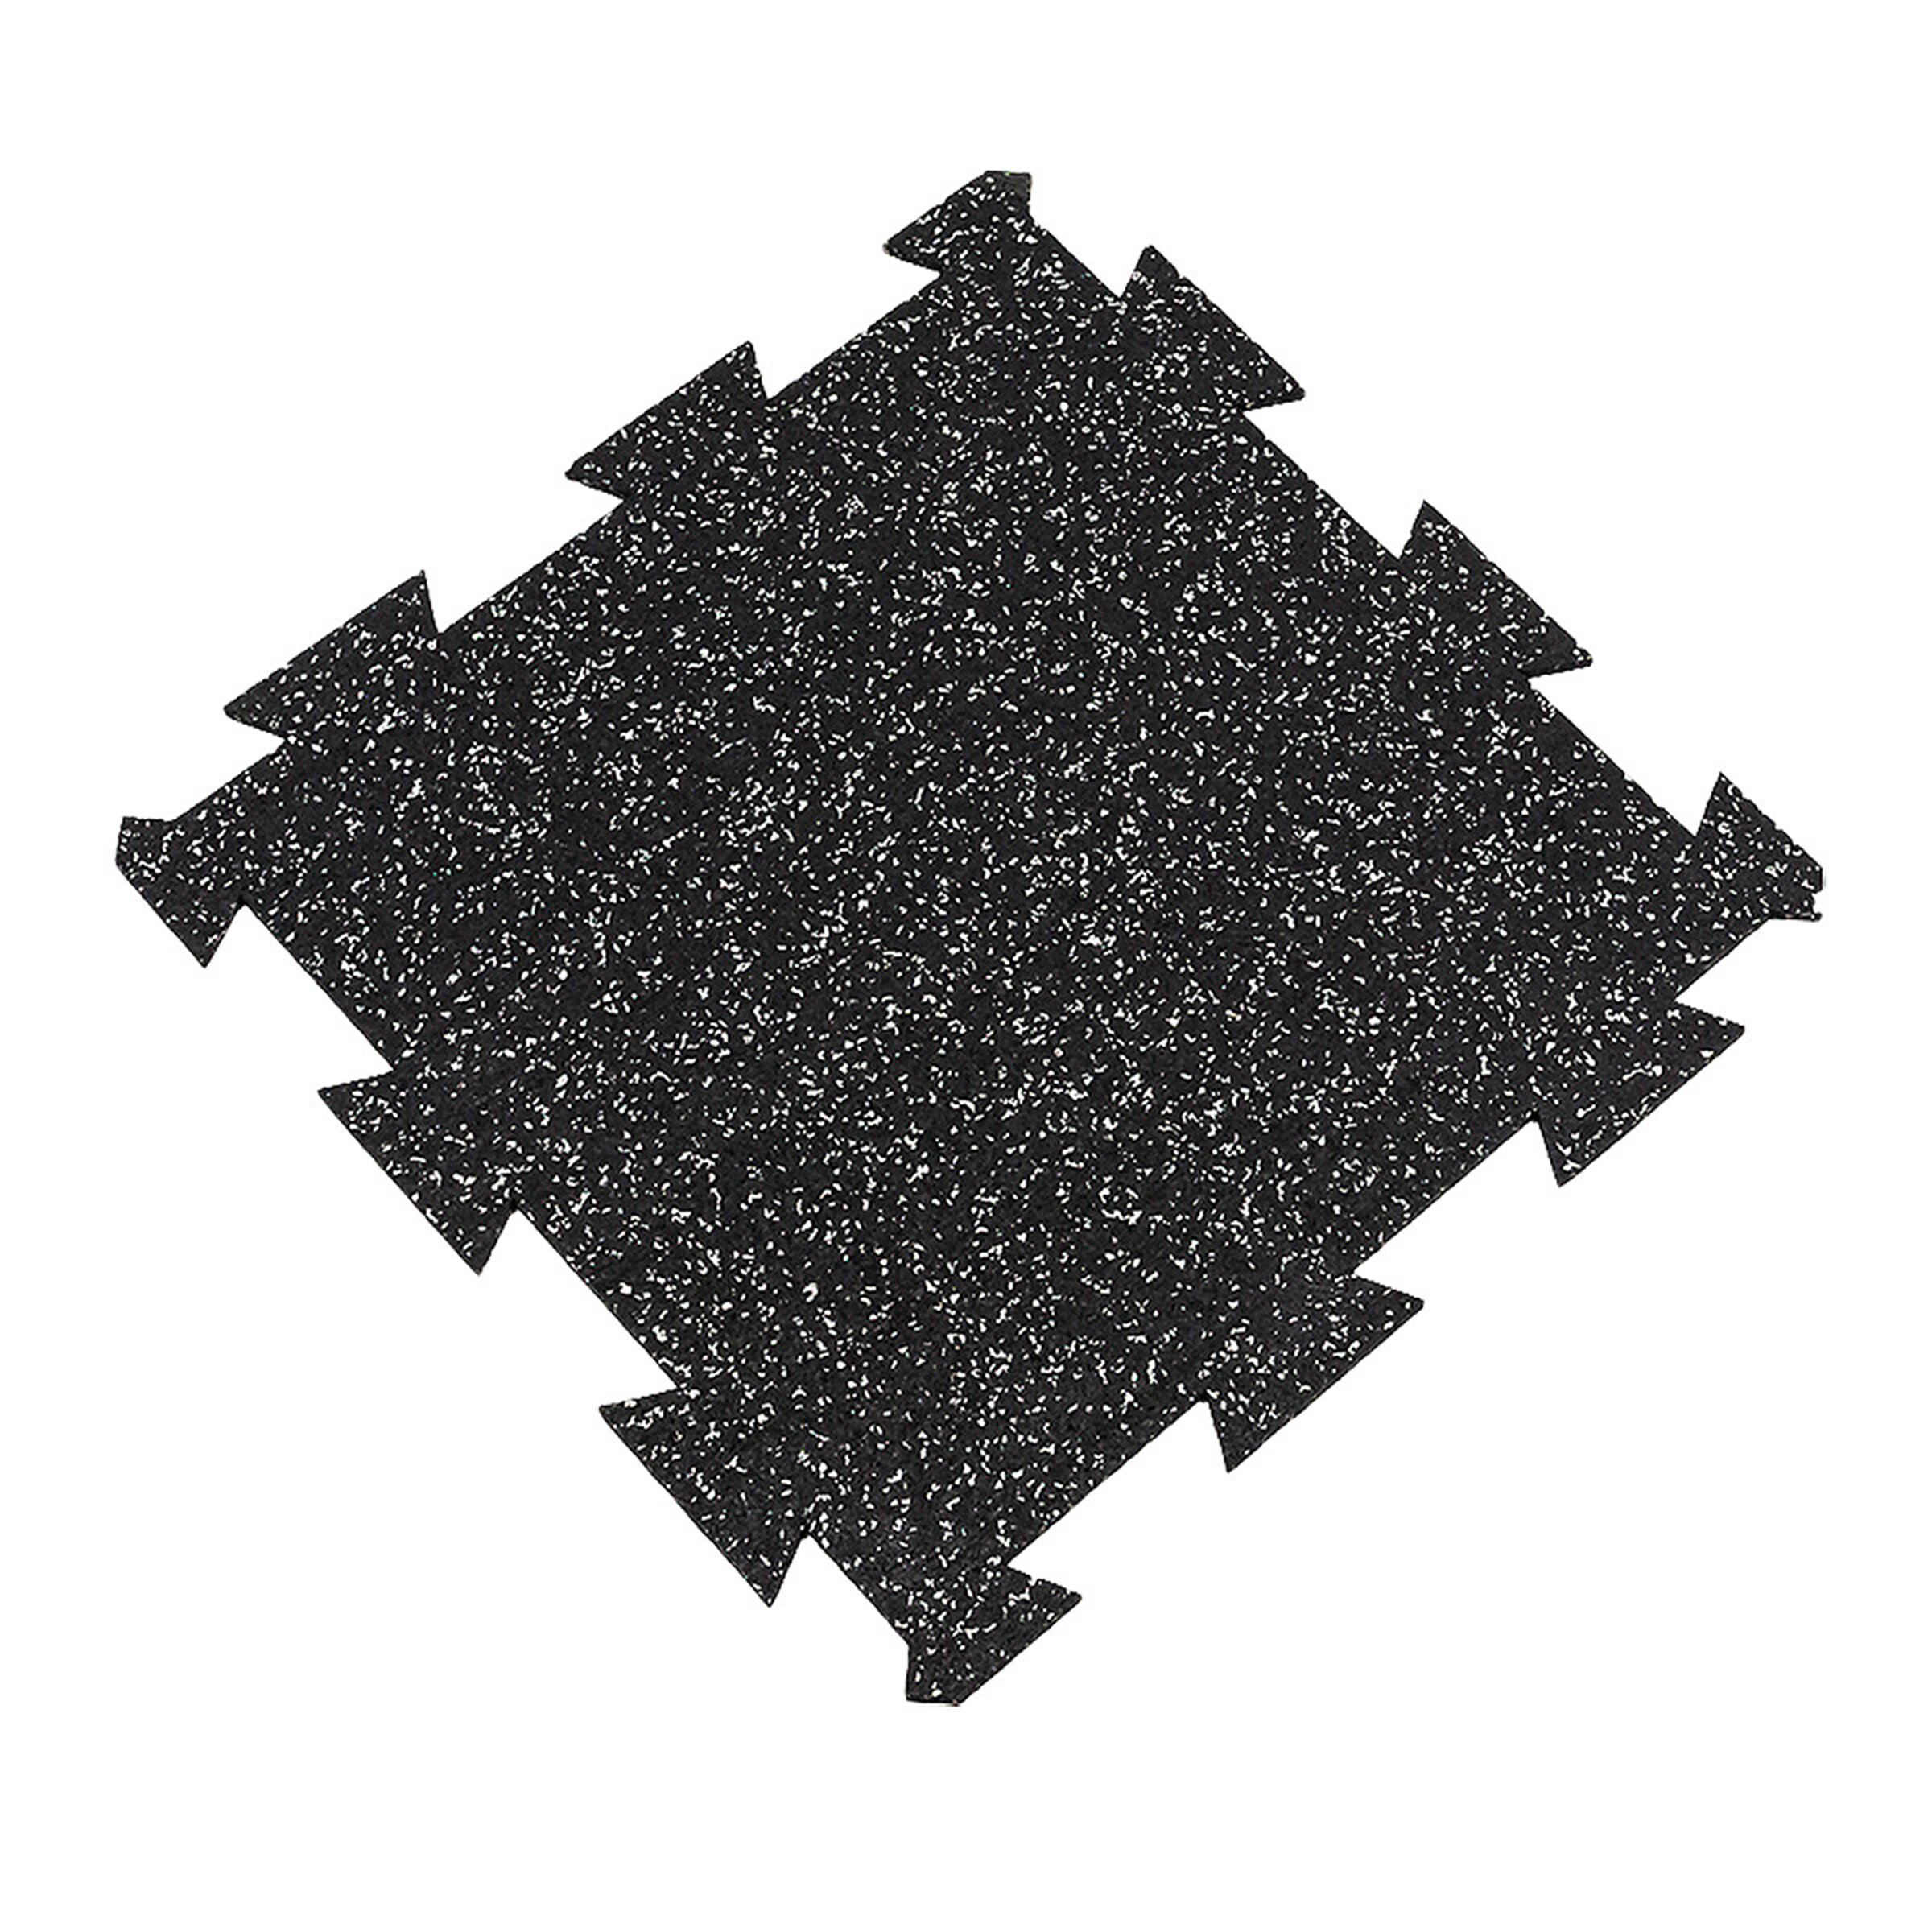 Černo-bílá gumová modulová puzzle dlažba (střed) FLOMA FitFlo SF1050 - délka 50 cm, šířka 50 cm, výška 1,6 cm